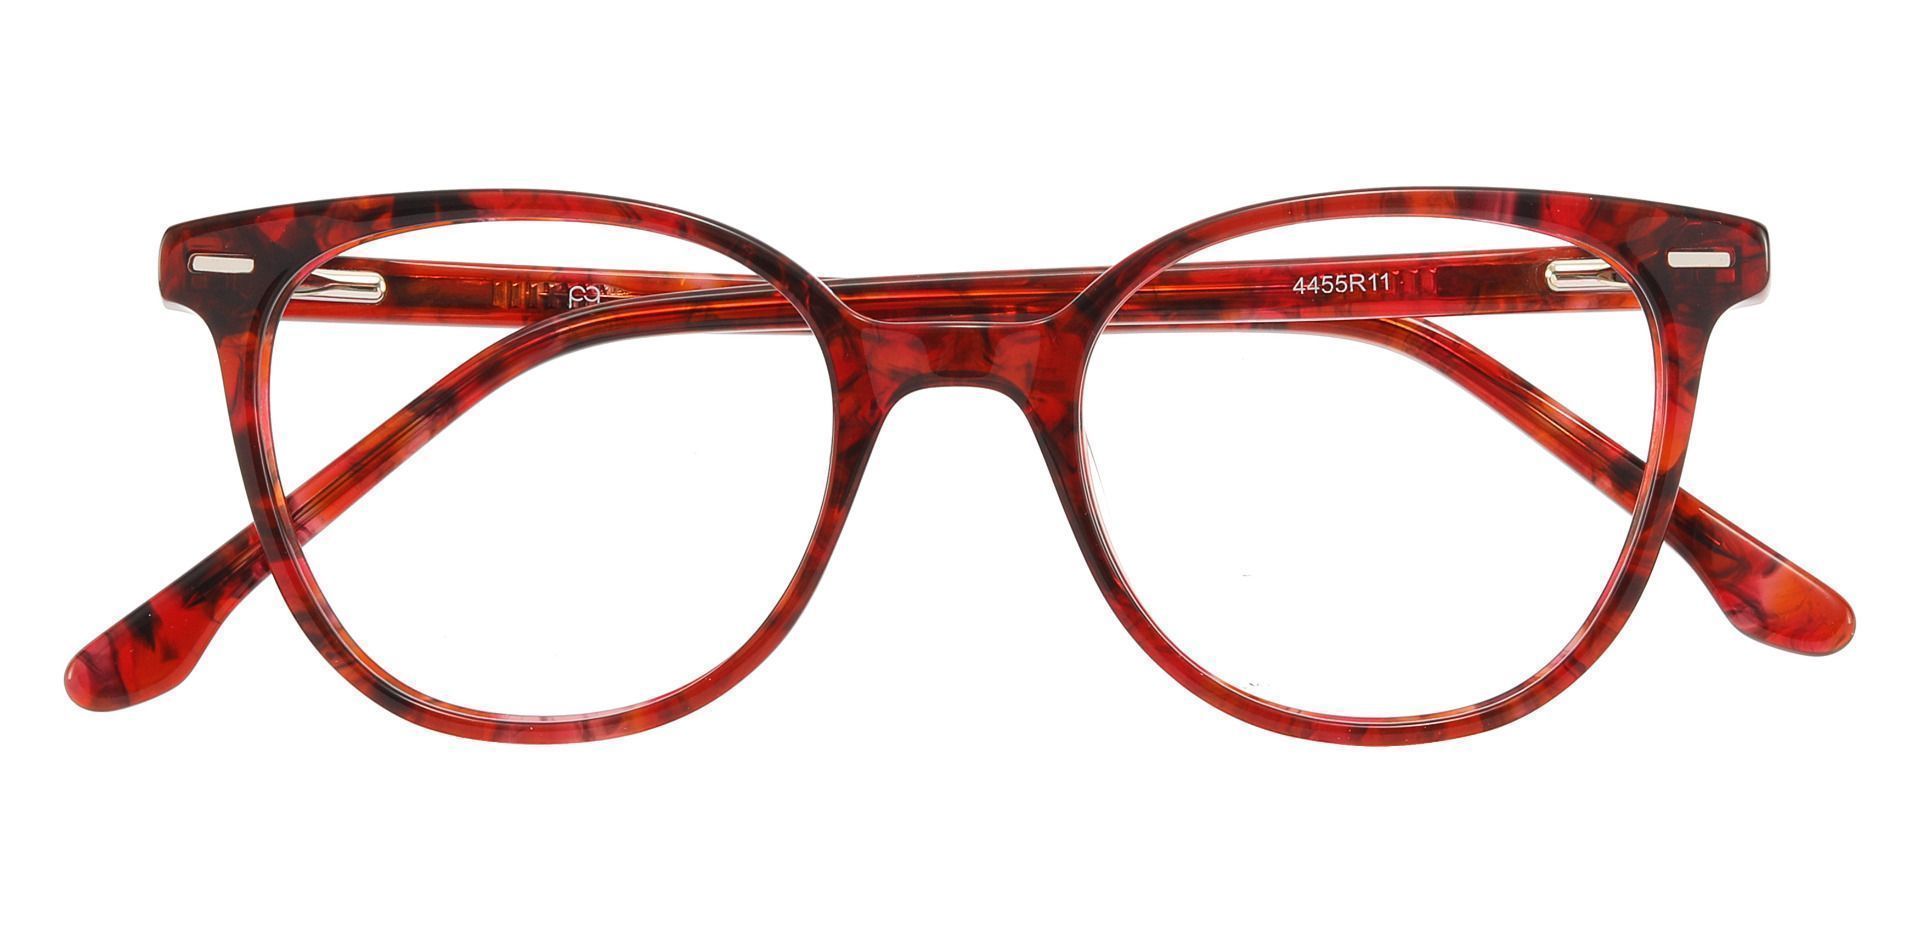 Chili Oval Non-Rx Glasses - Red